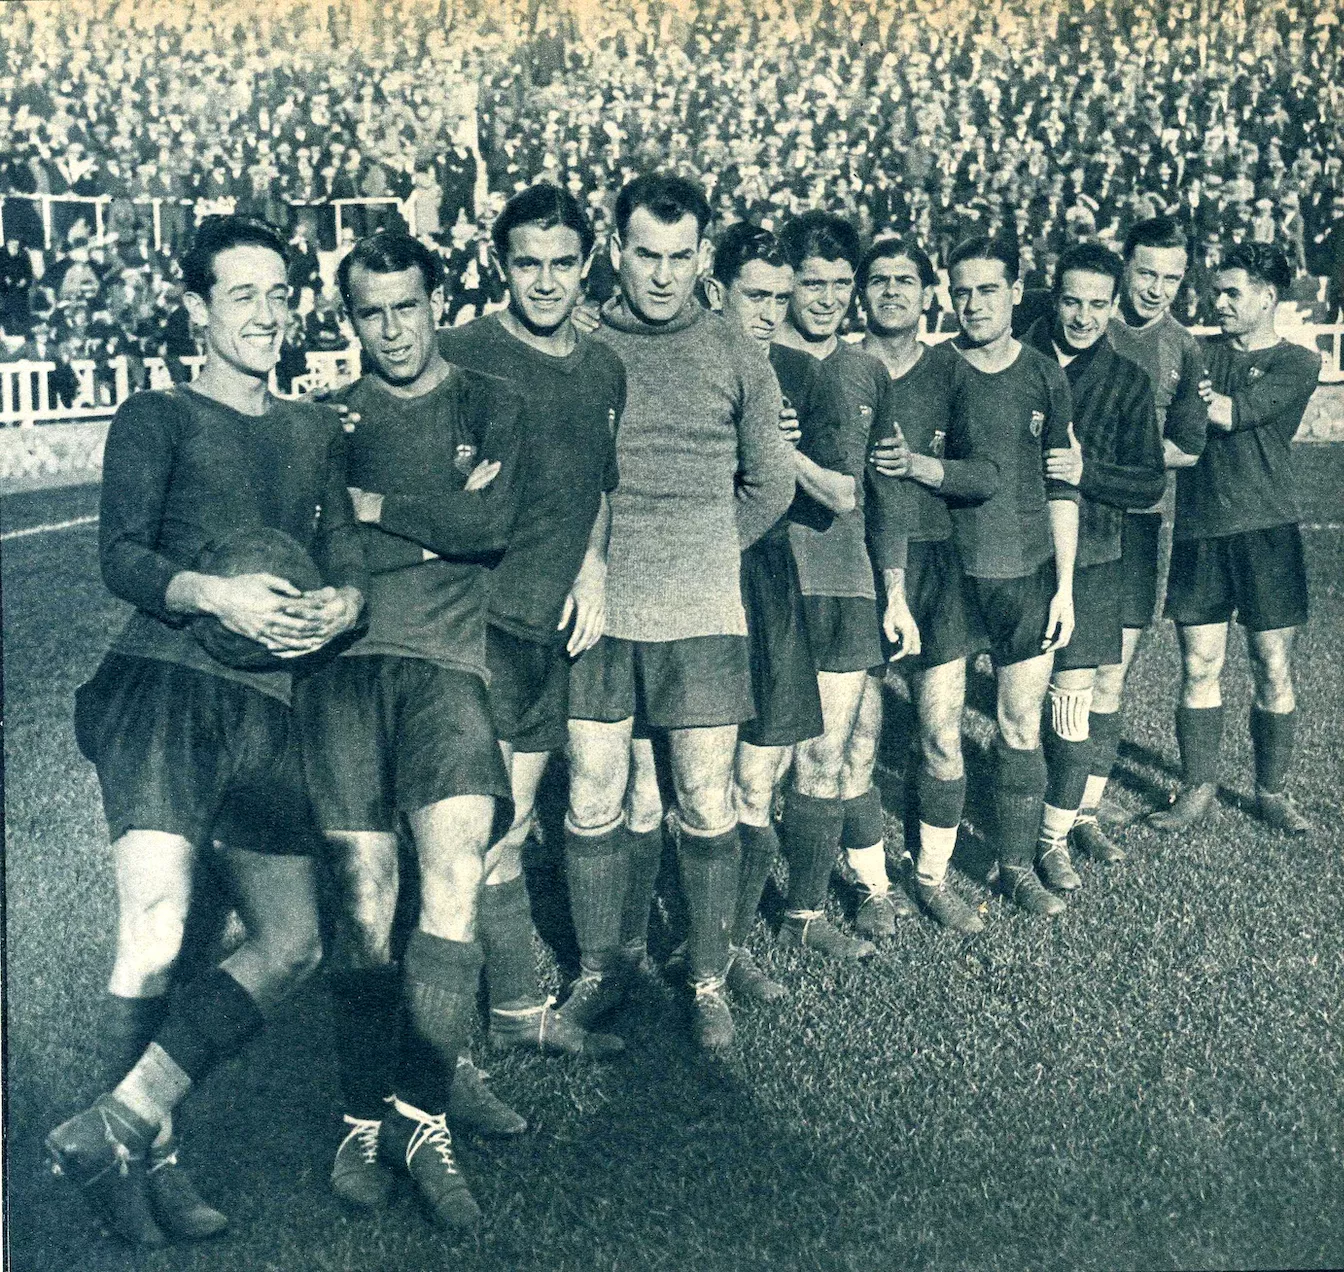 Dels deu equips, el Futbol Club Barcelona era el més potent, si tenim en compte la capacitat dels camps respectius